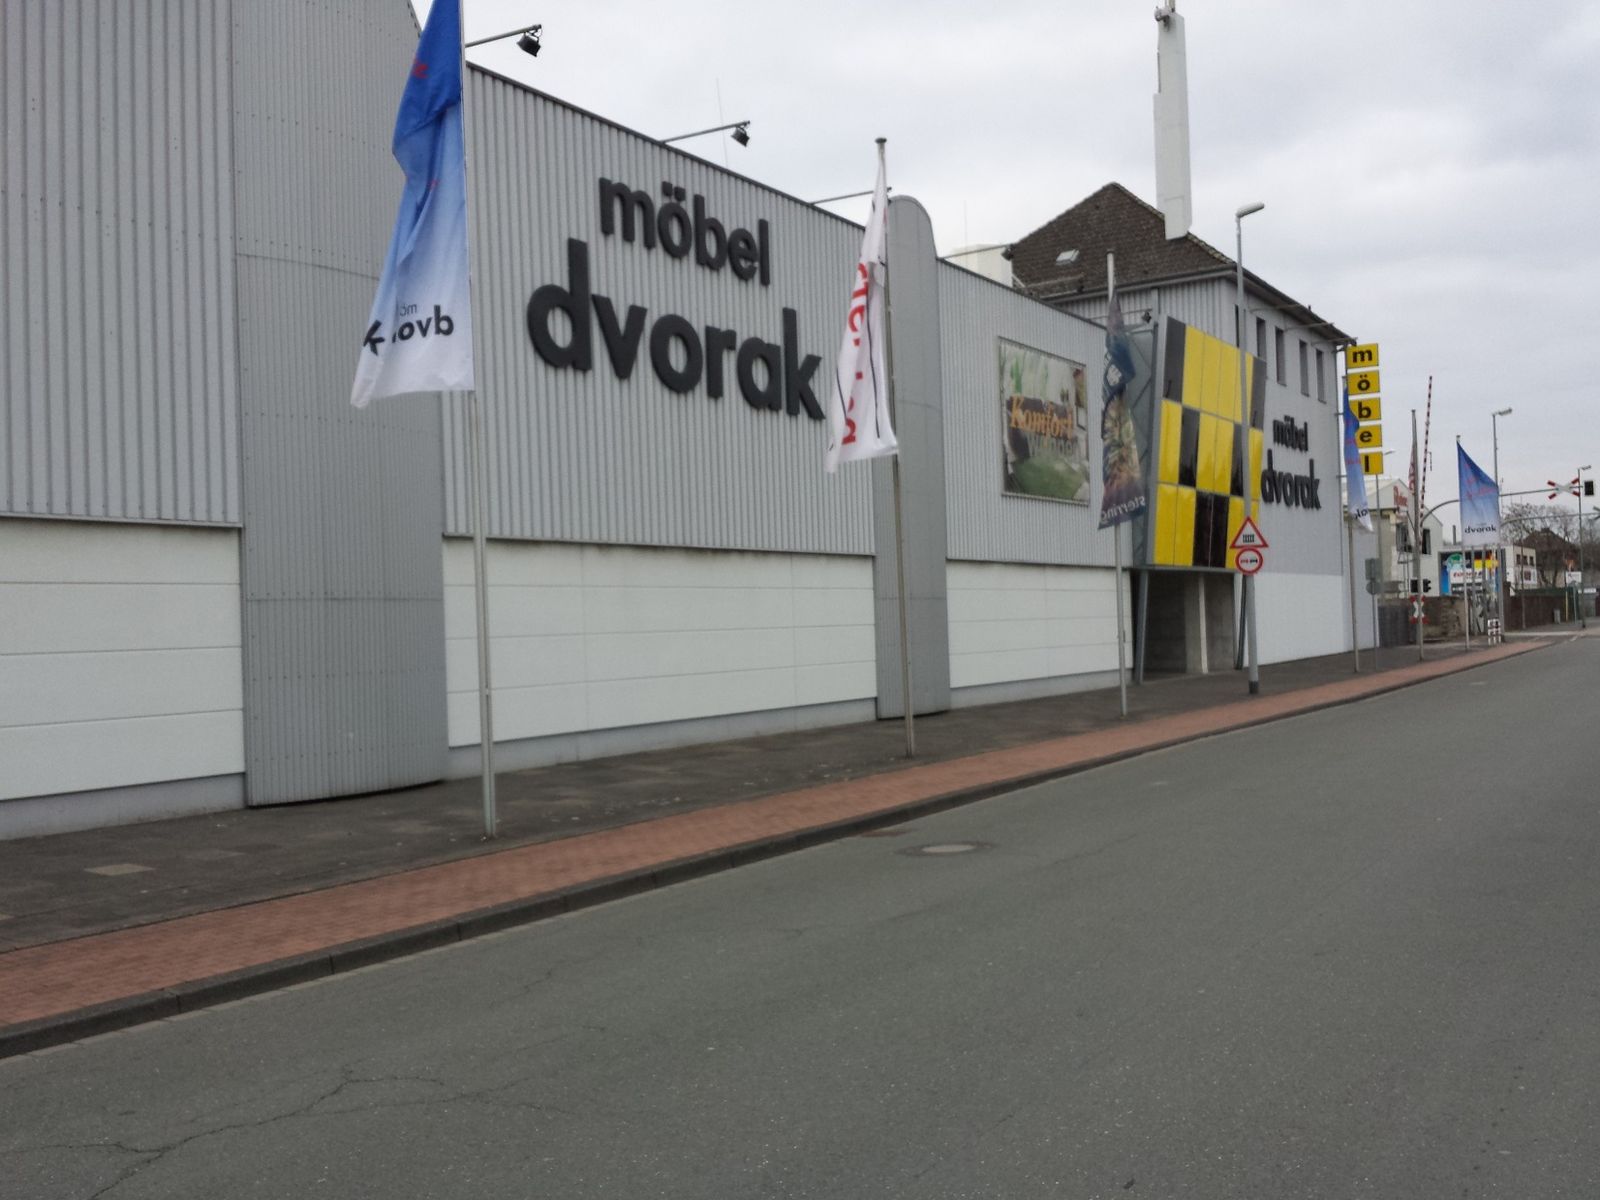 Möbel Dvorak GmbH in Duisburg ⇒ in Das Örtliche